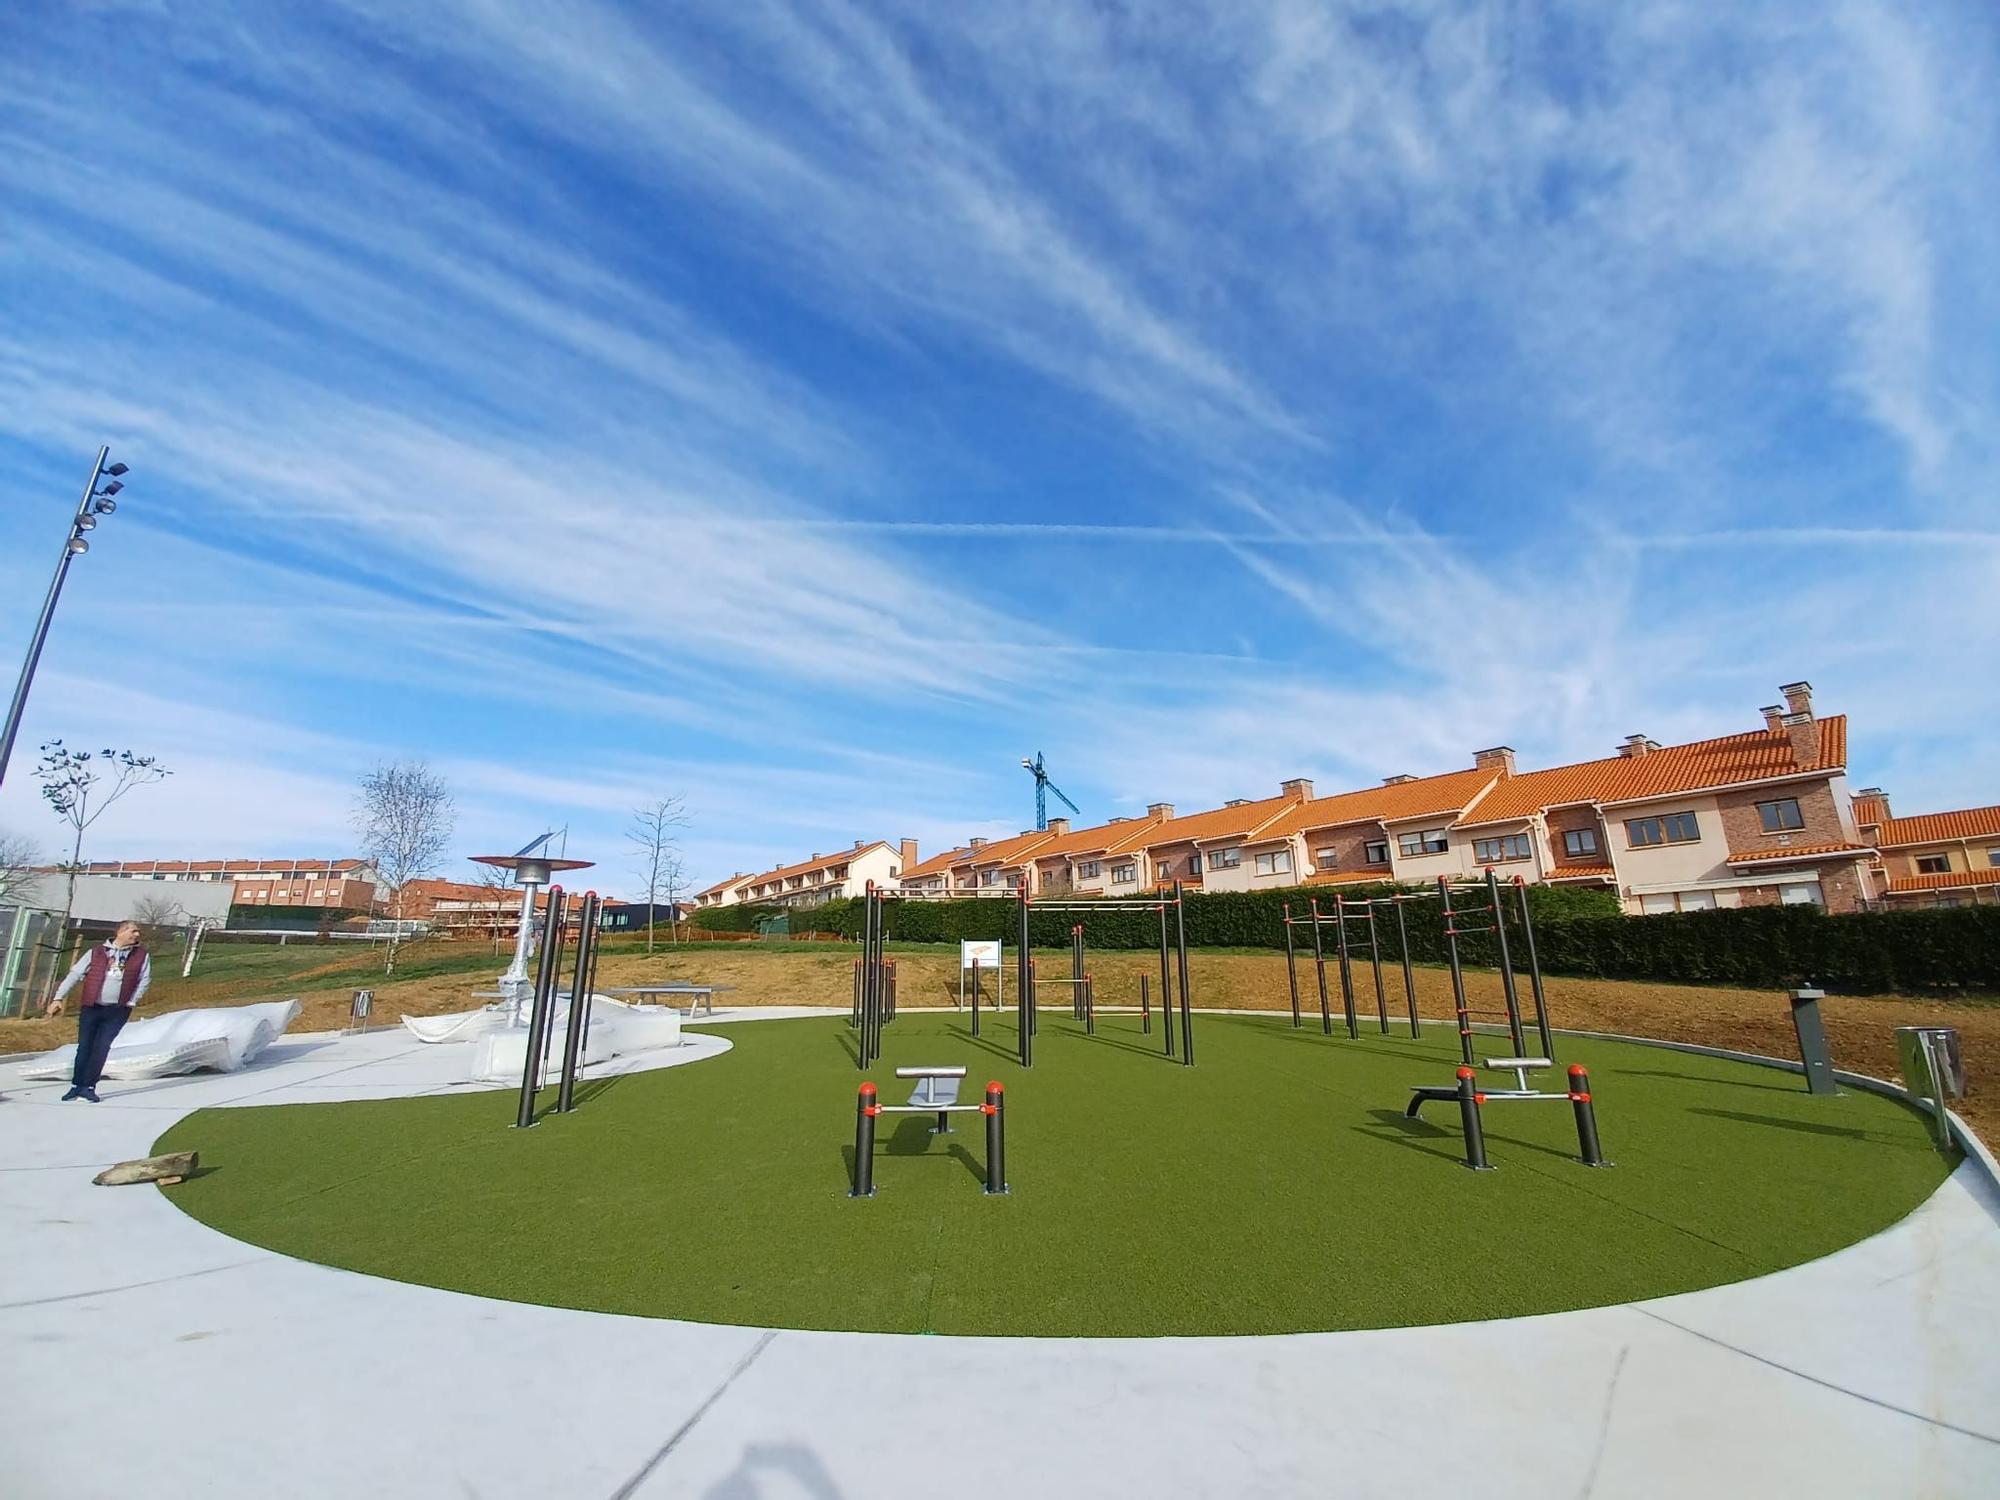 La Fresneda ya tiene su gran parque de ocio juvenil, con zona de calistenia, "tumbonas" de hormigón y punto de carga para móviles